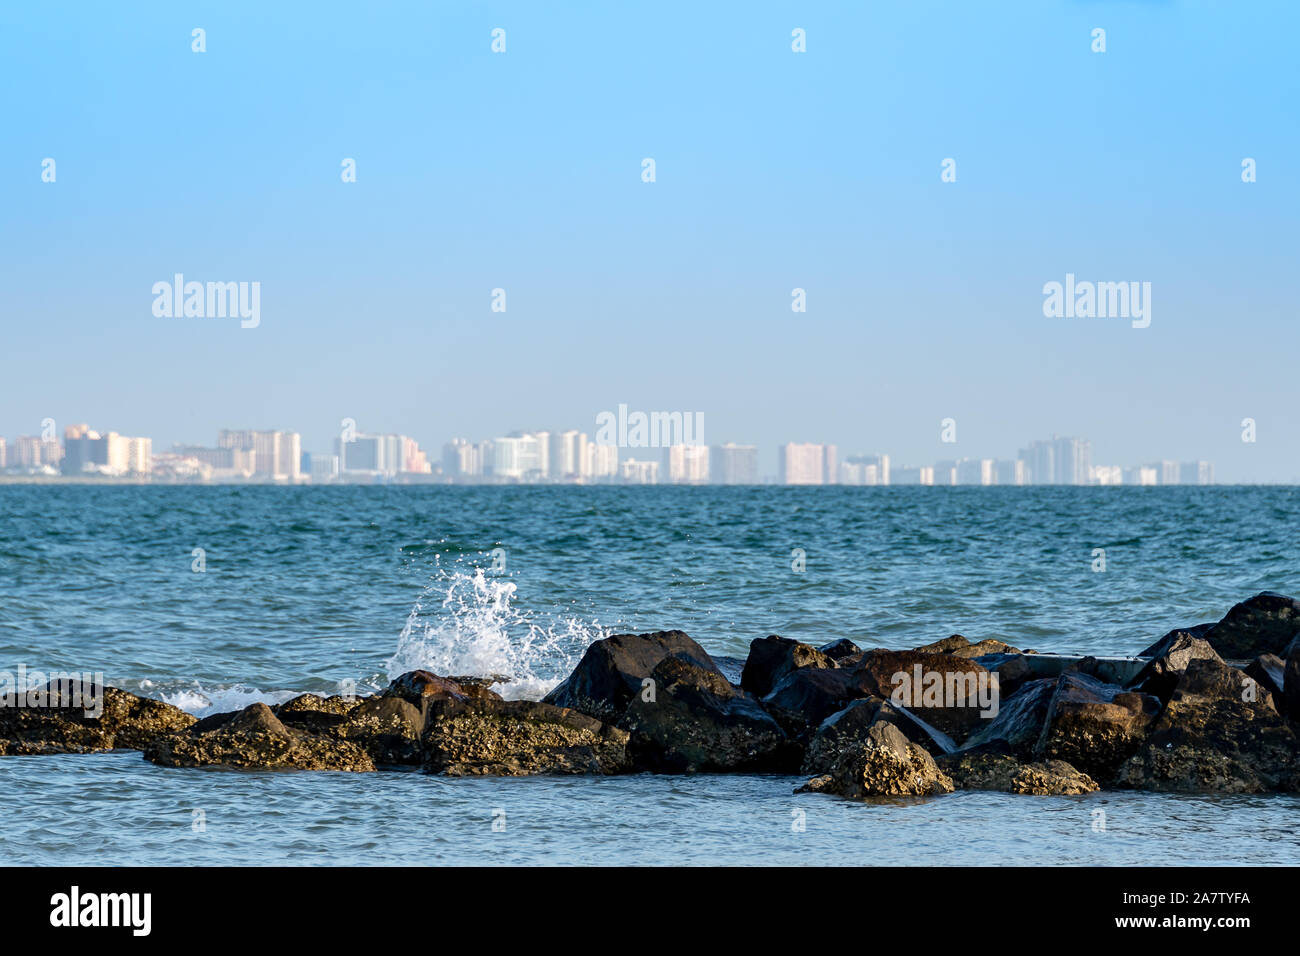 Anzeigen von Clearwater, Florida mit den Wellen auf dem Steg Stockfoto